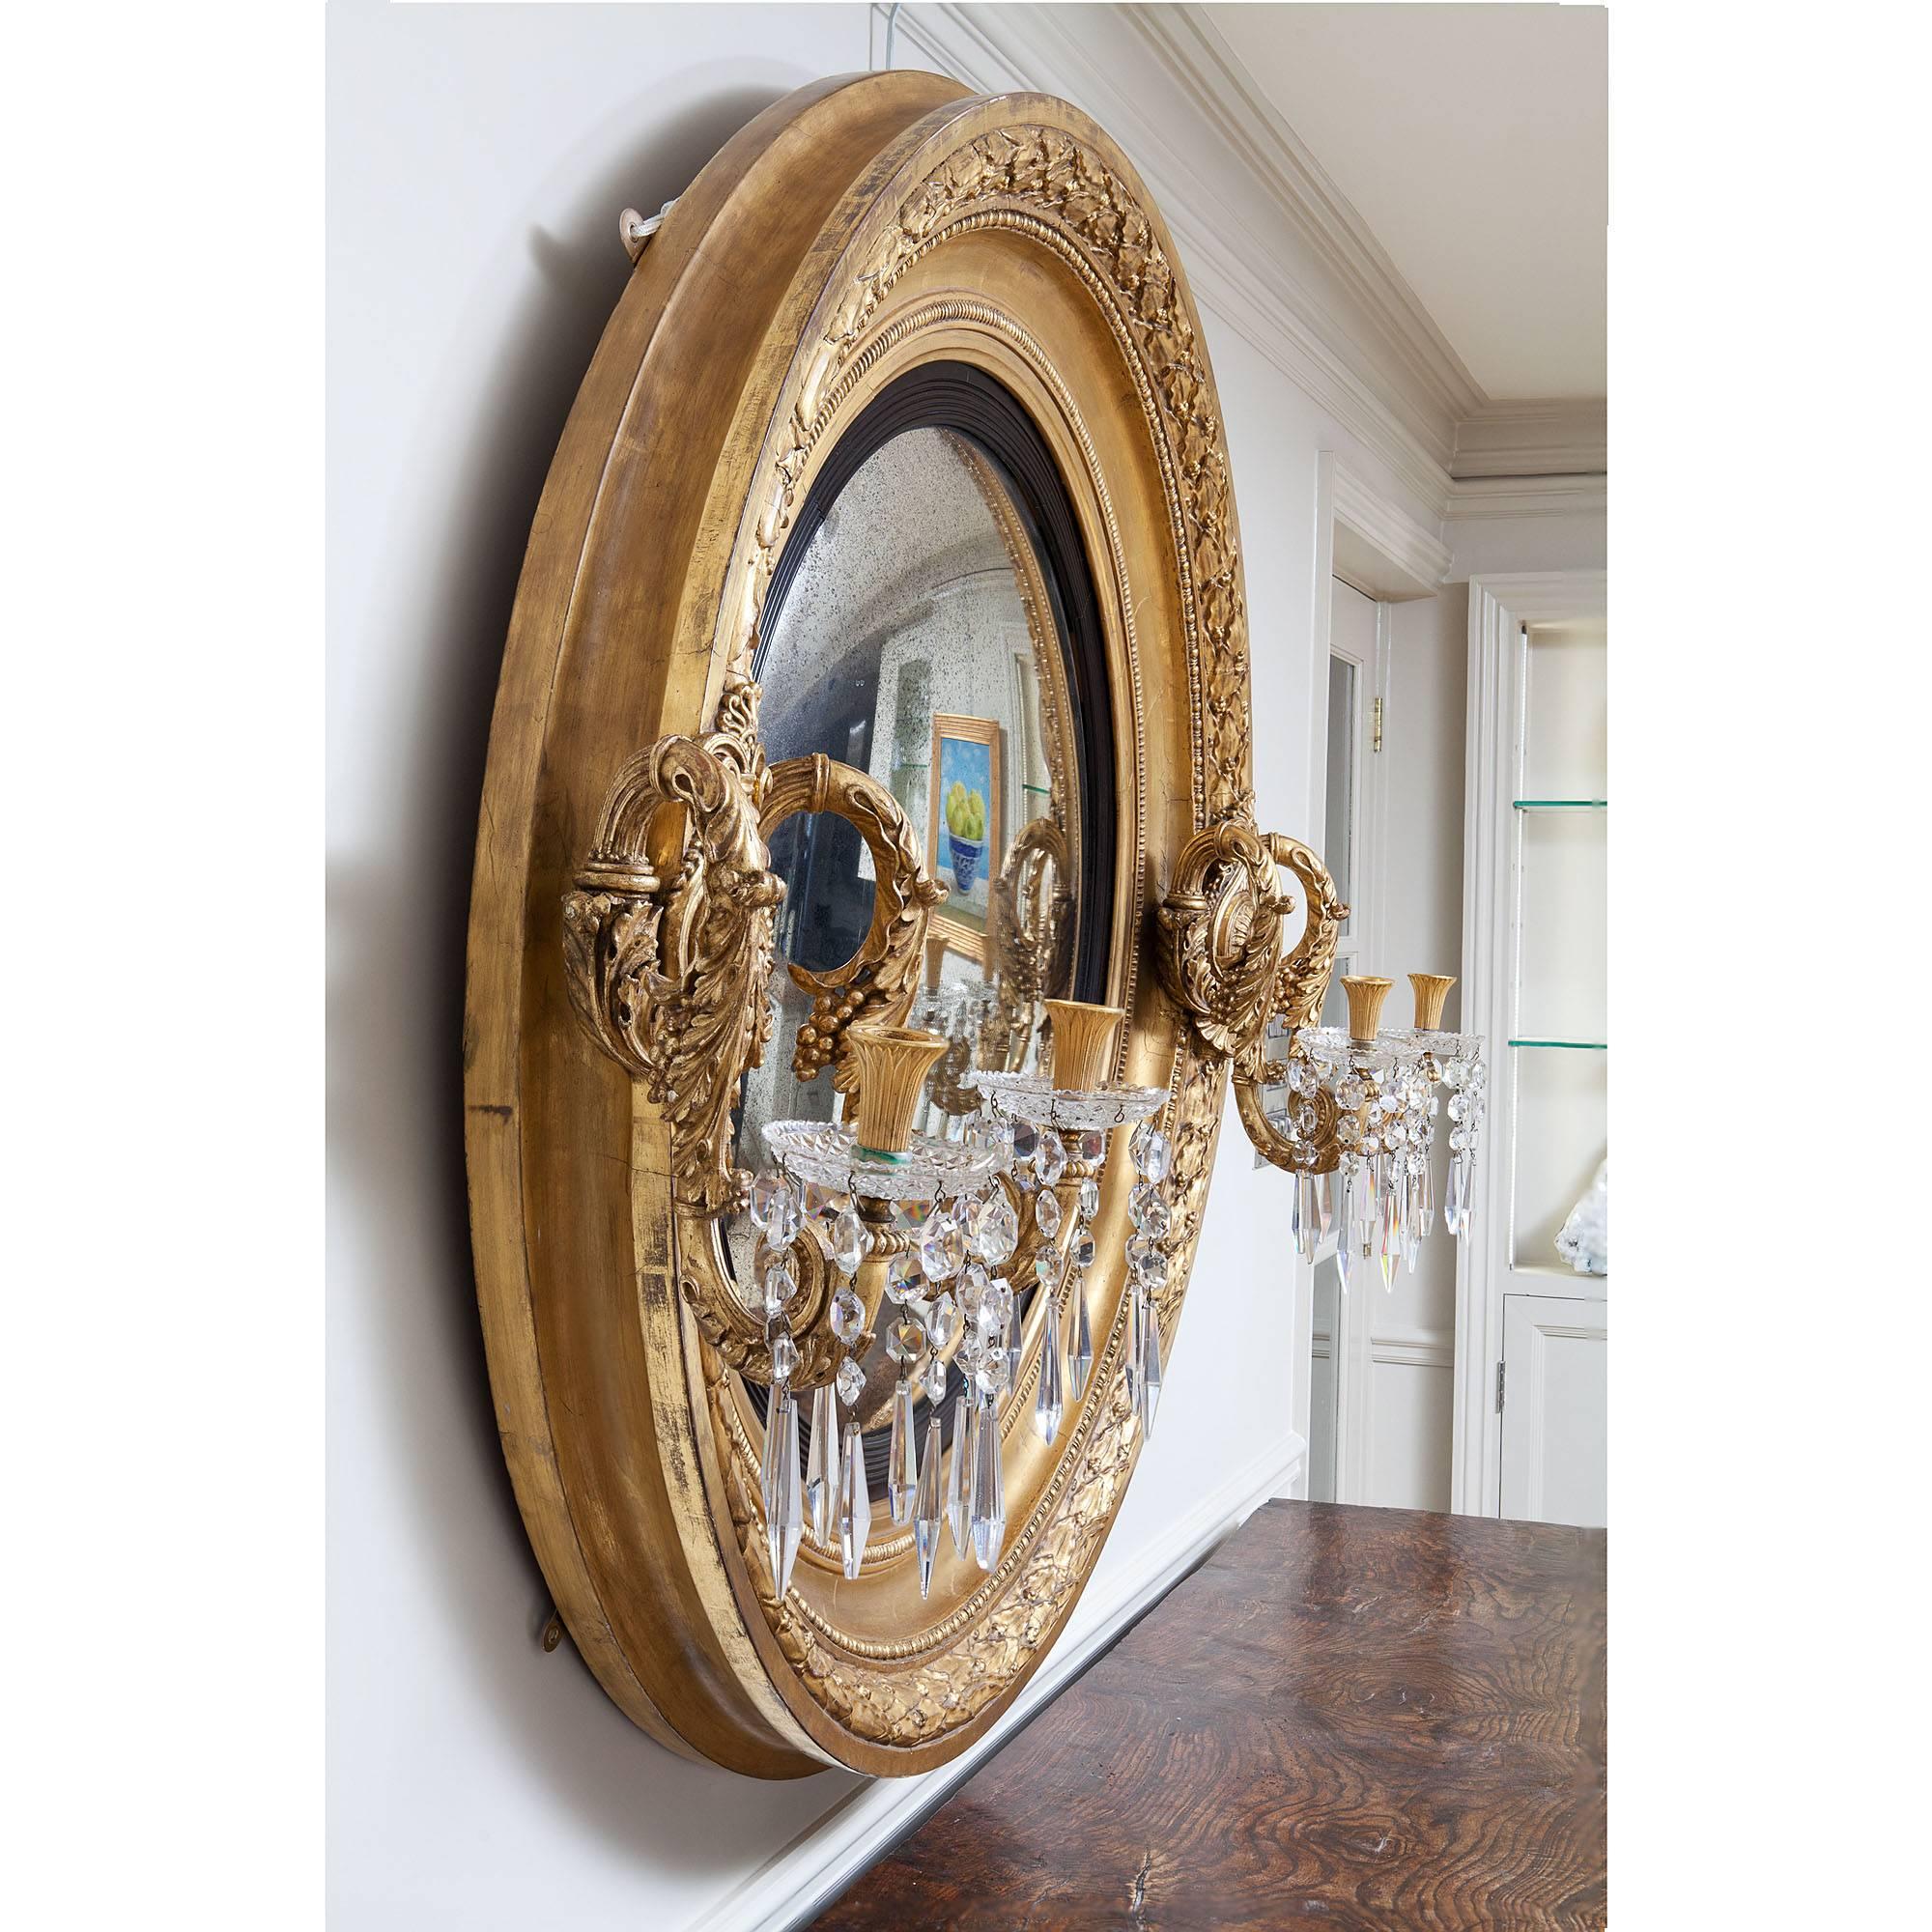 Ein wahrhaft fabelhafter, bedeutender, seltener und großartig proportionierter konvexer Spiegel aus vergoldetem Holz im Regency-Stil. Der massive Rahmen ist mit überlappenden Lorbeerblättern und -beeren beschnitzt und trägt einen kühn geschnitzten